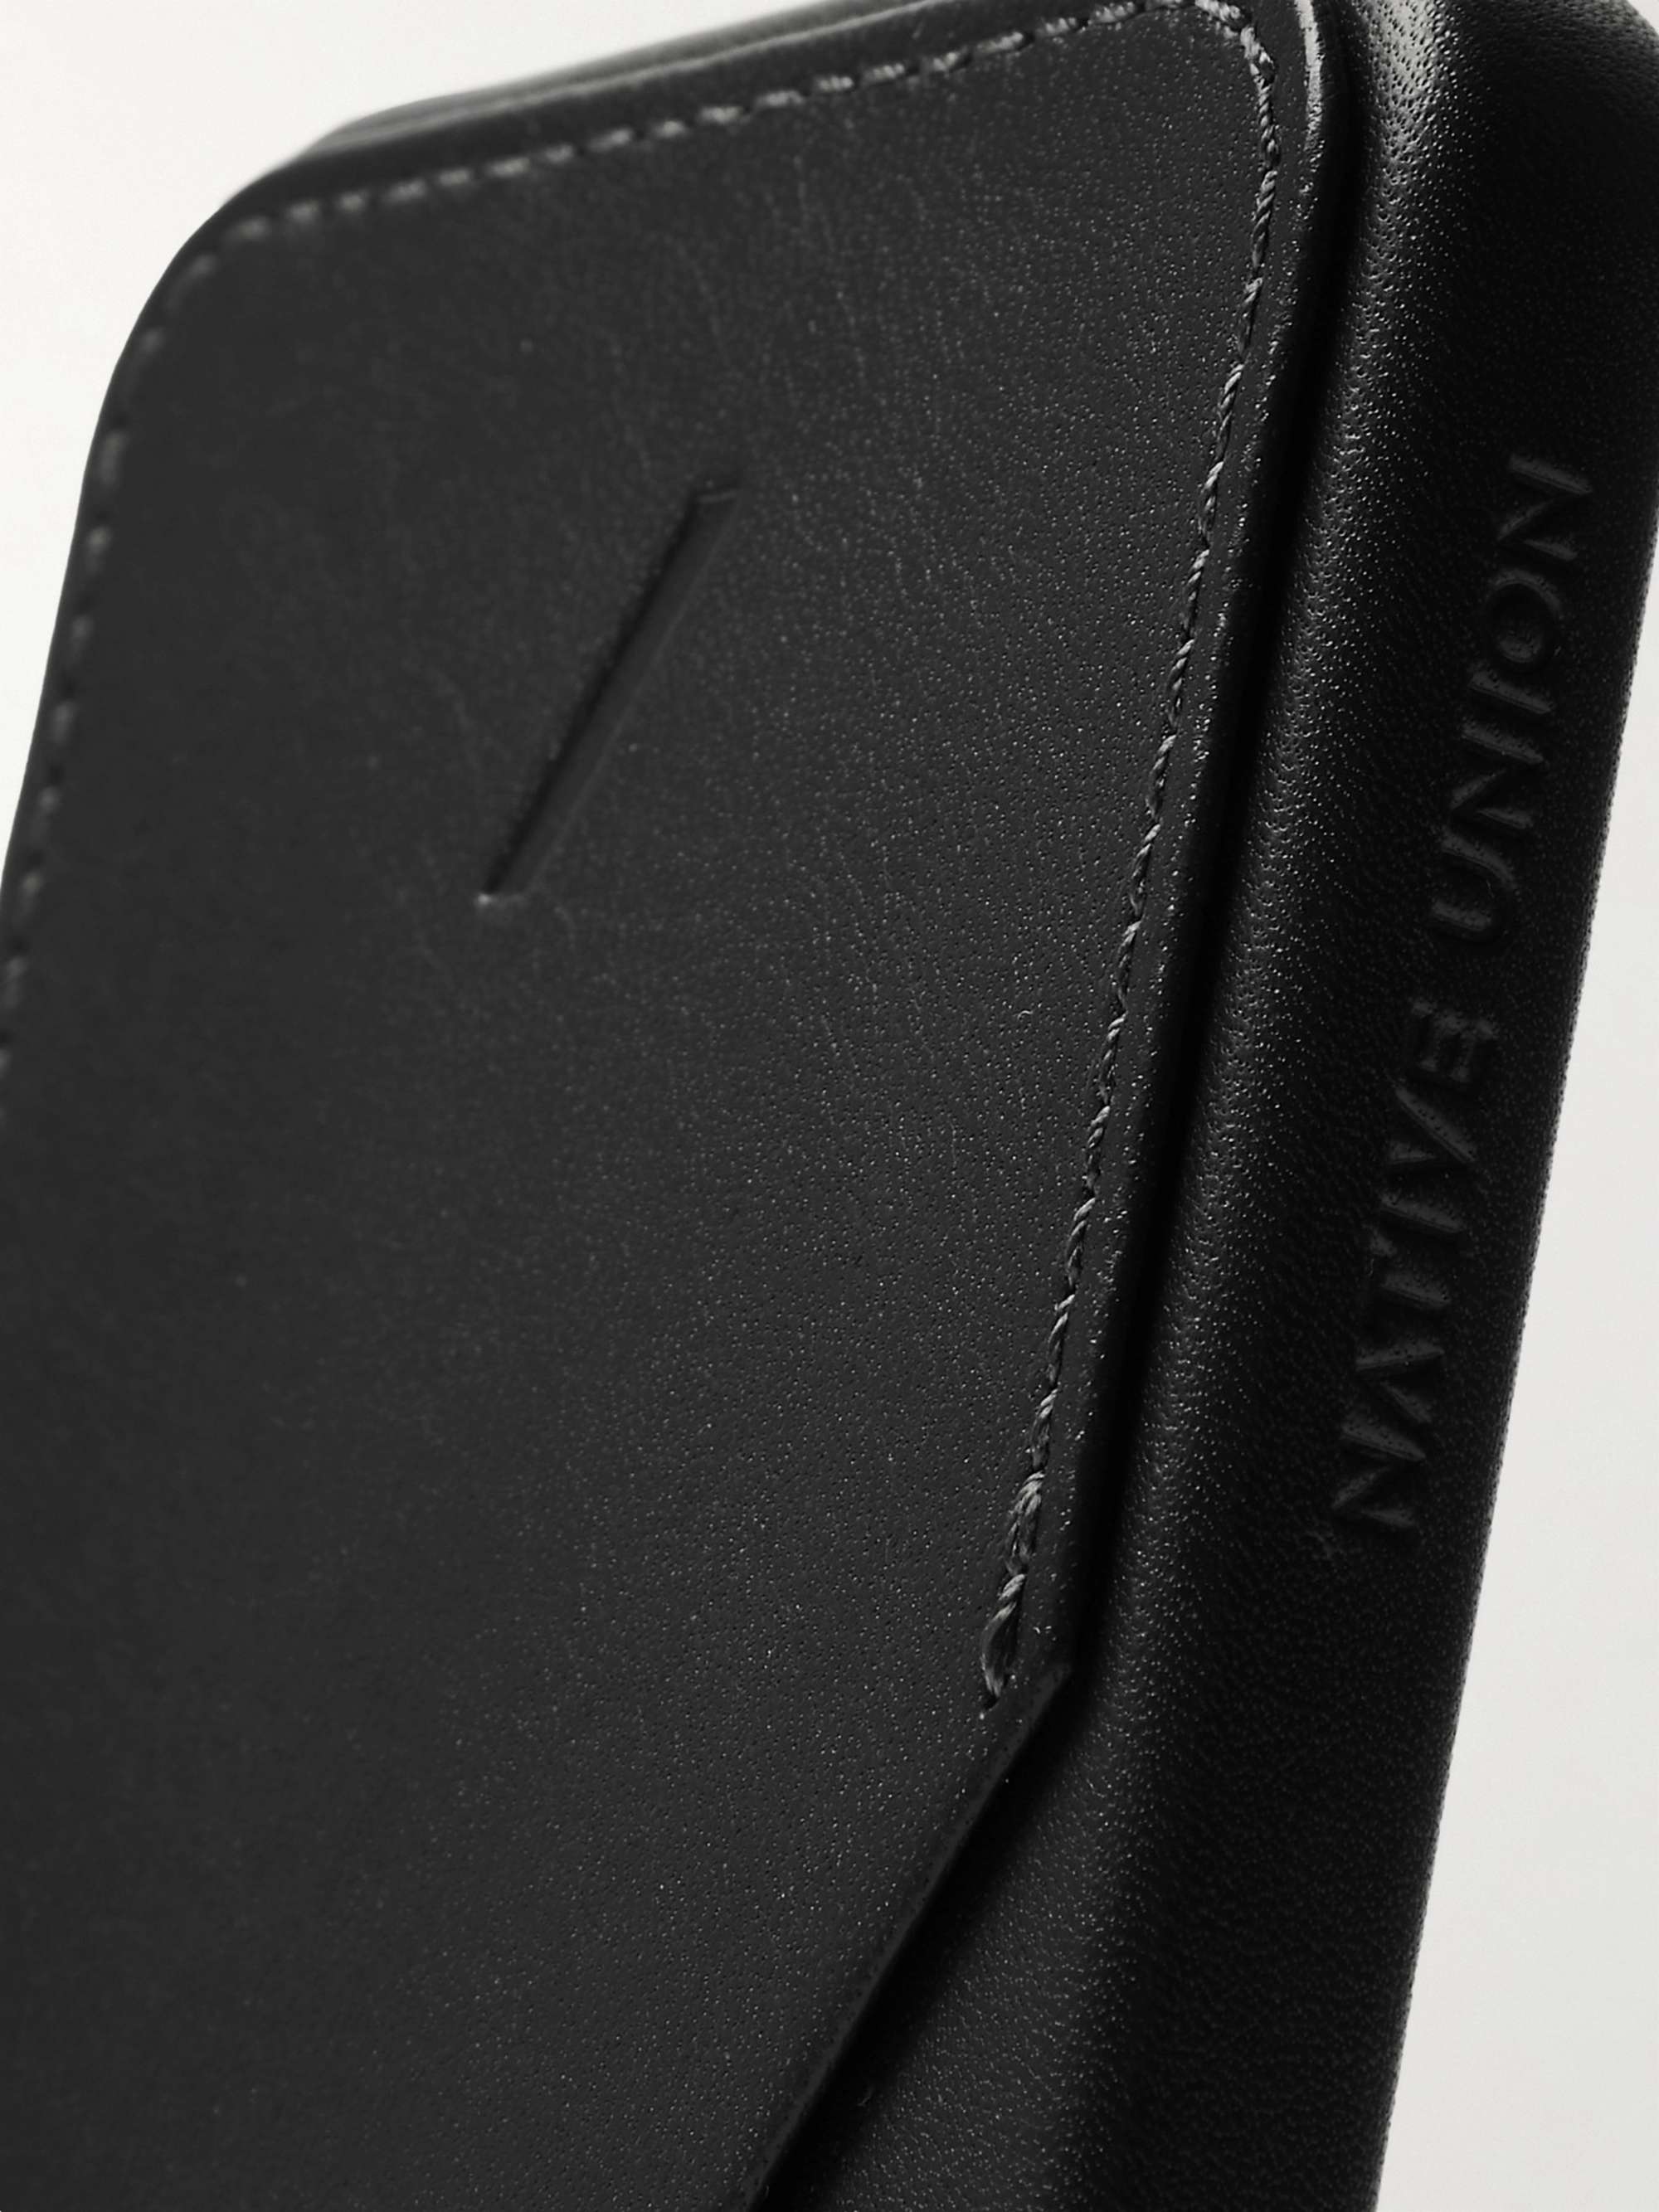 NATIVE UNION Clic Card Leather iPhone 12 Mini Case